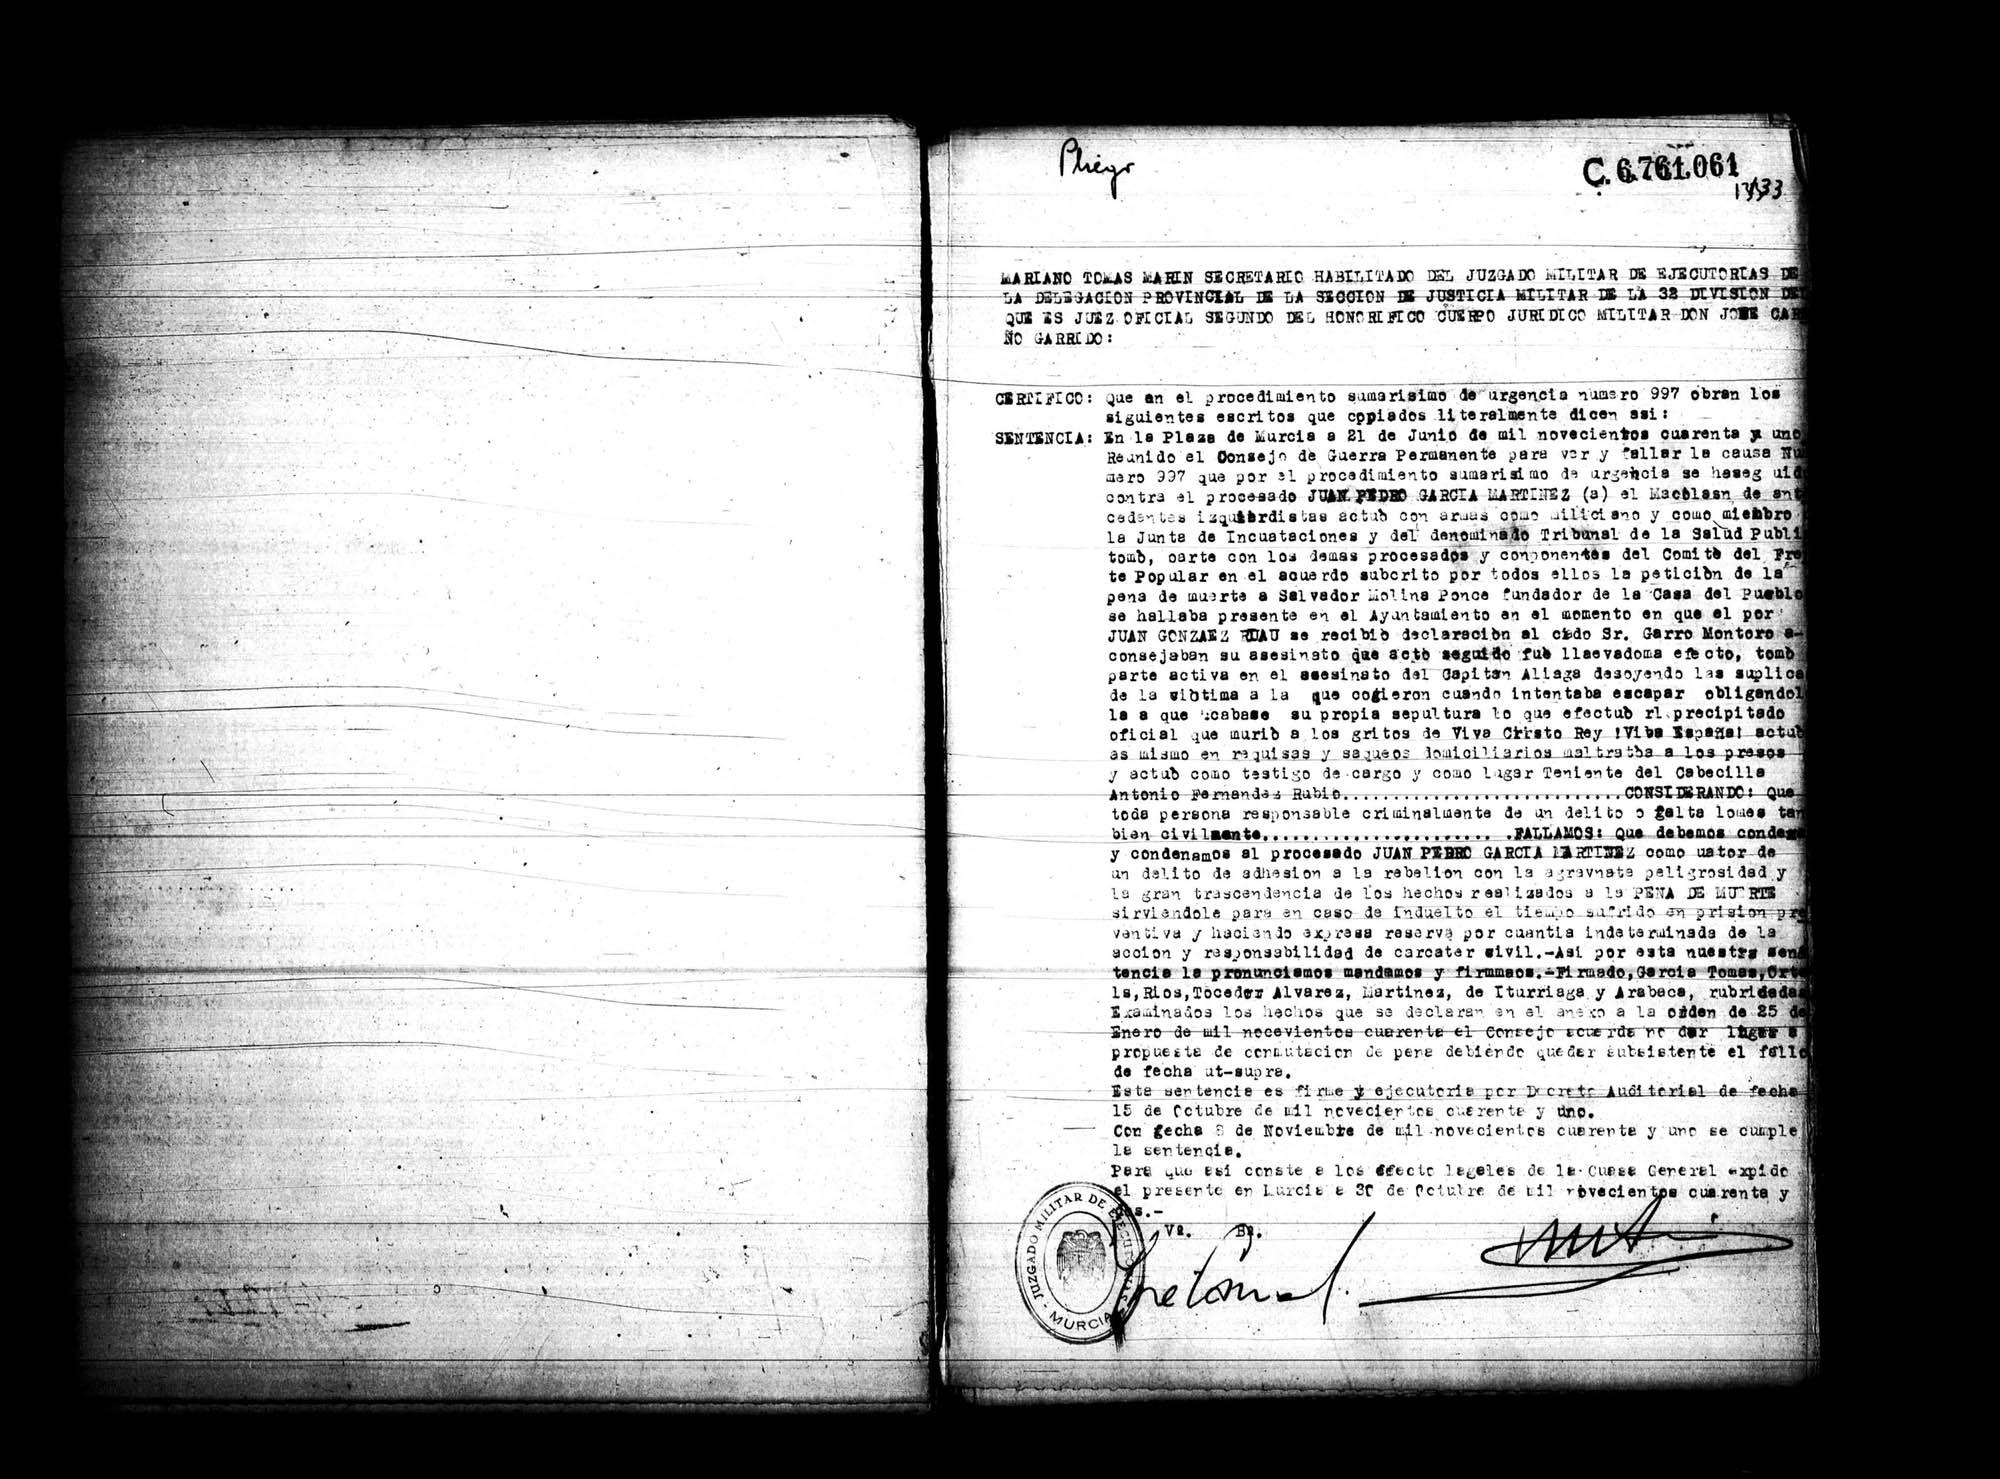 Certificado de la sentencia pronunciada contra Juan Pedro García Martínez, causa 997, el 21 de junio de 1941 en Murcia.